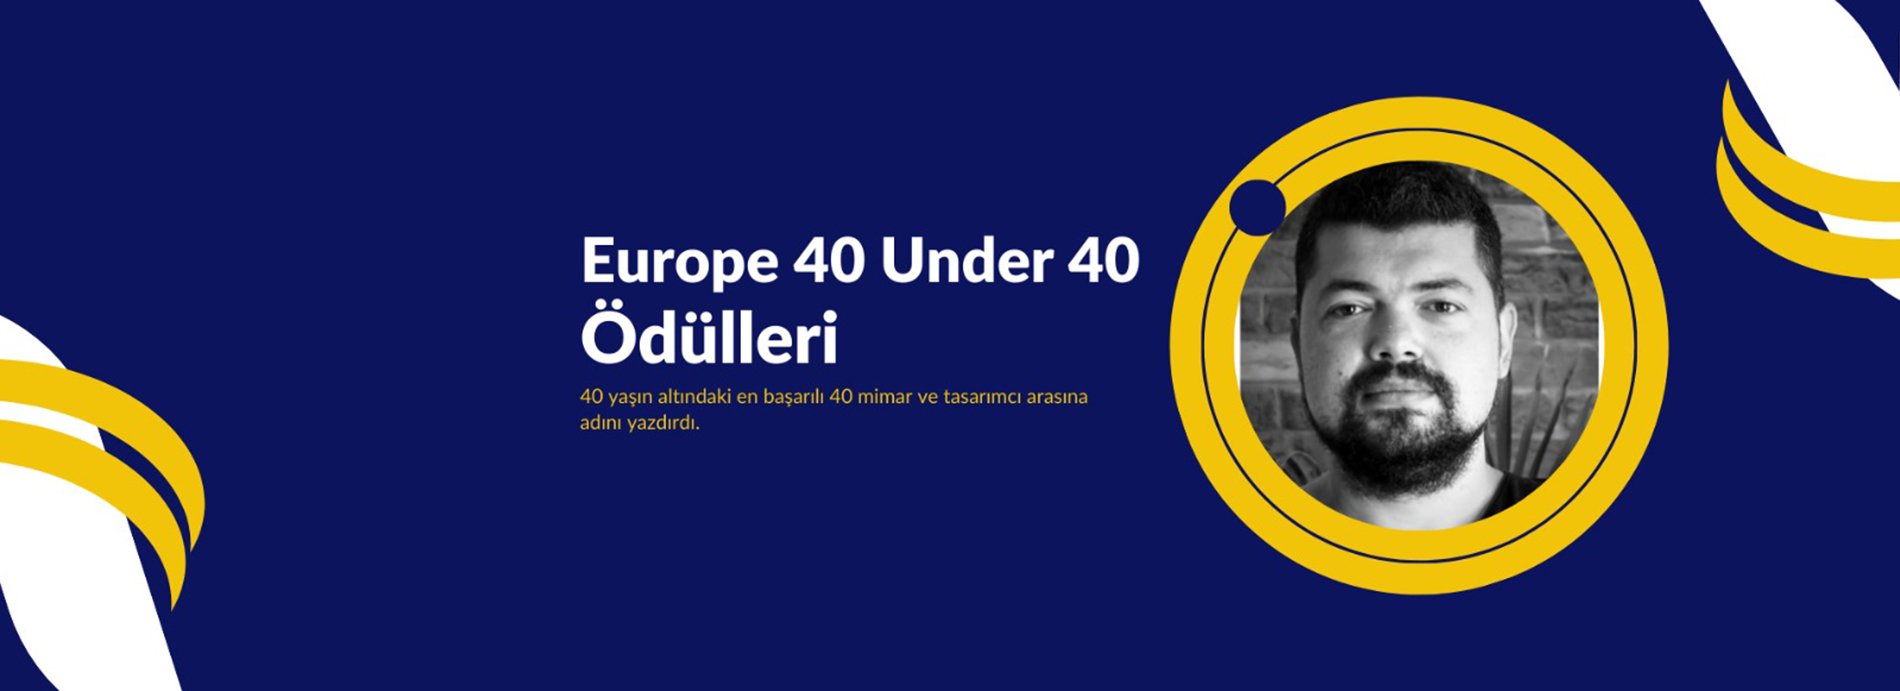 Mezunumuz Caner Bilgin, “Europe 40 Under 40” Listesine Girdi